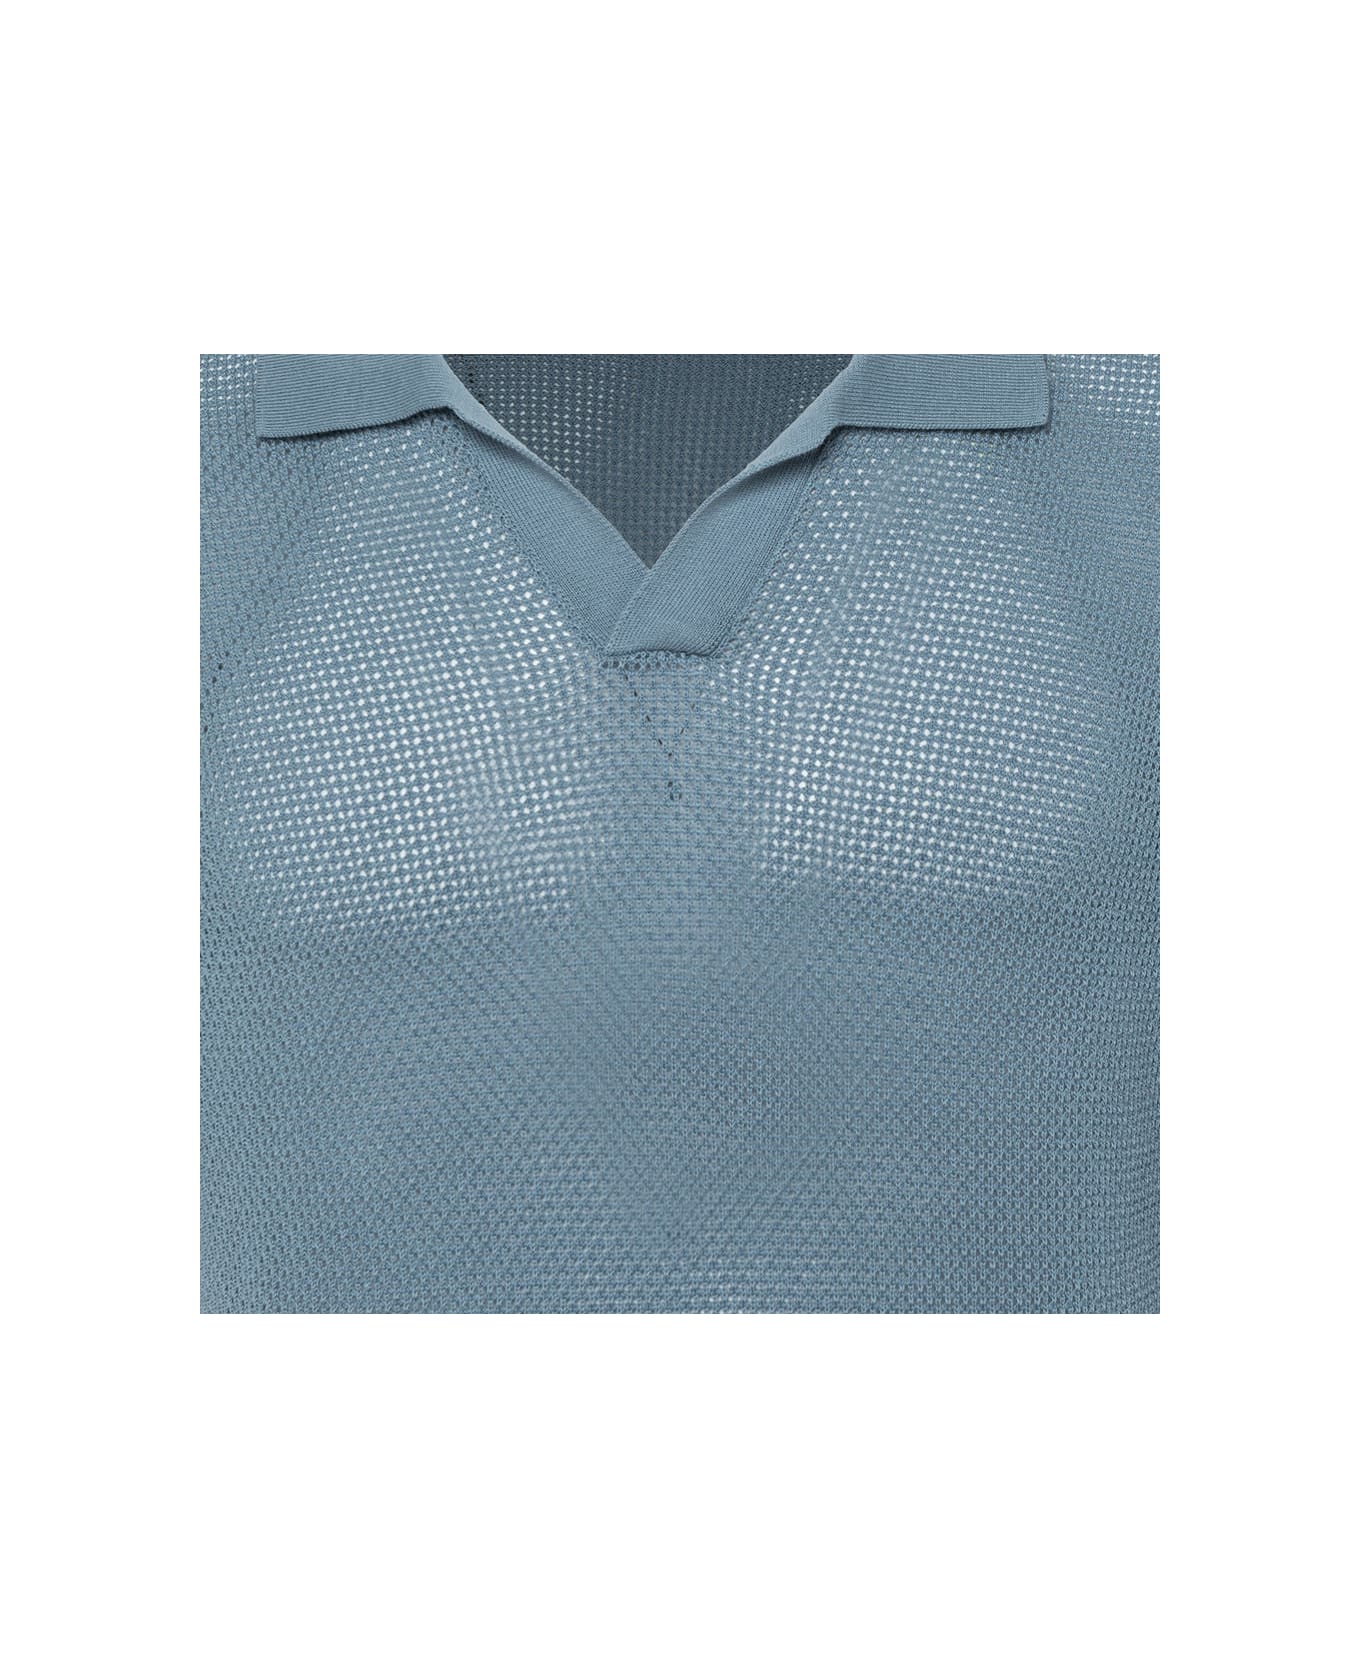 Tagliatore Mesh Polo Shirt - Azzurro